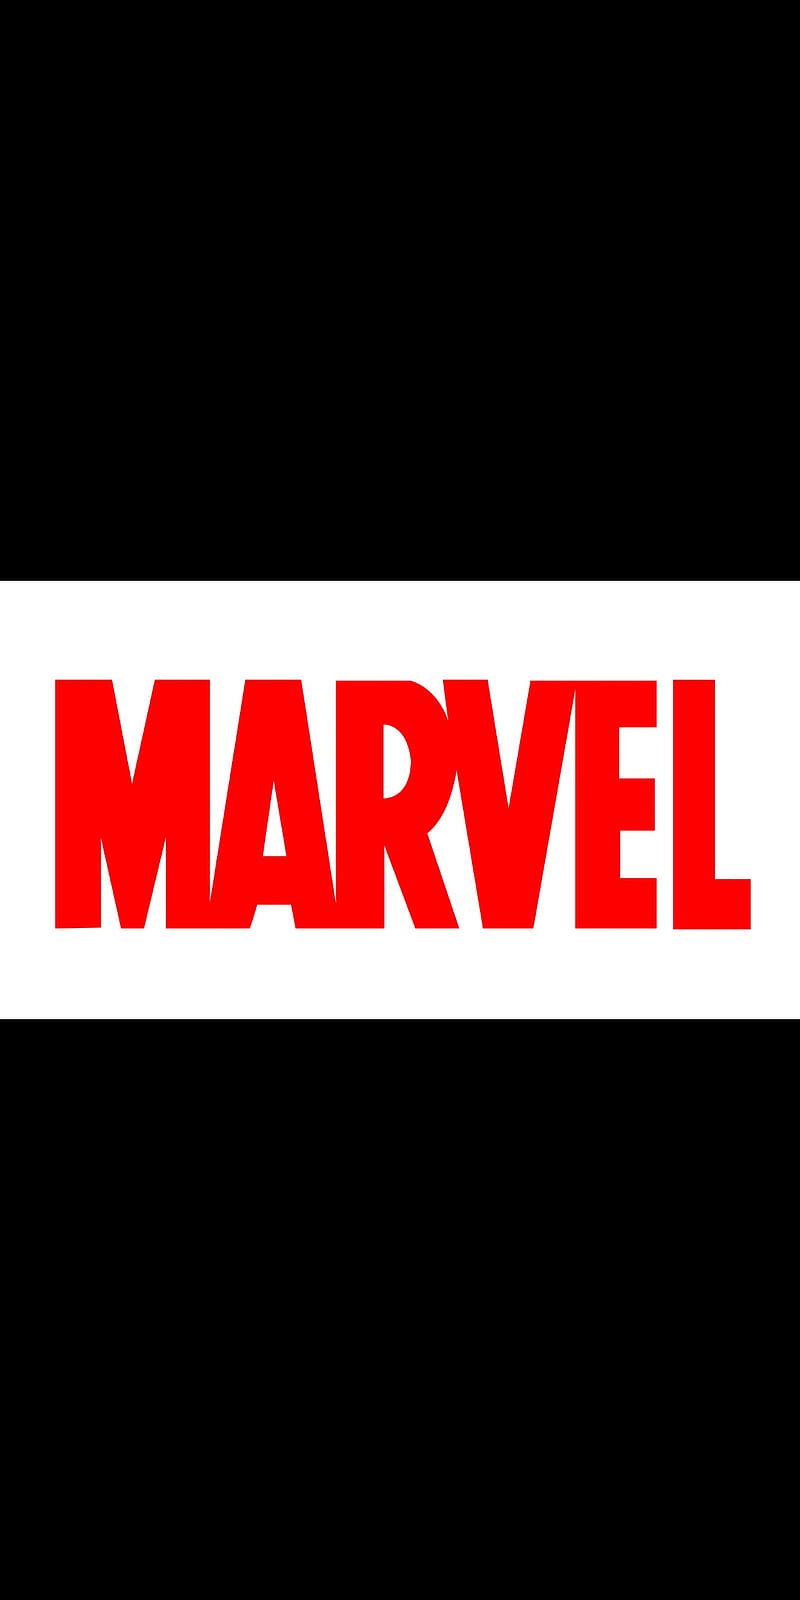 Marvel Logo Marvellogo Marvel Studios Red Special Original Hd Phone Wallpaper Peakpx